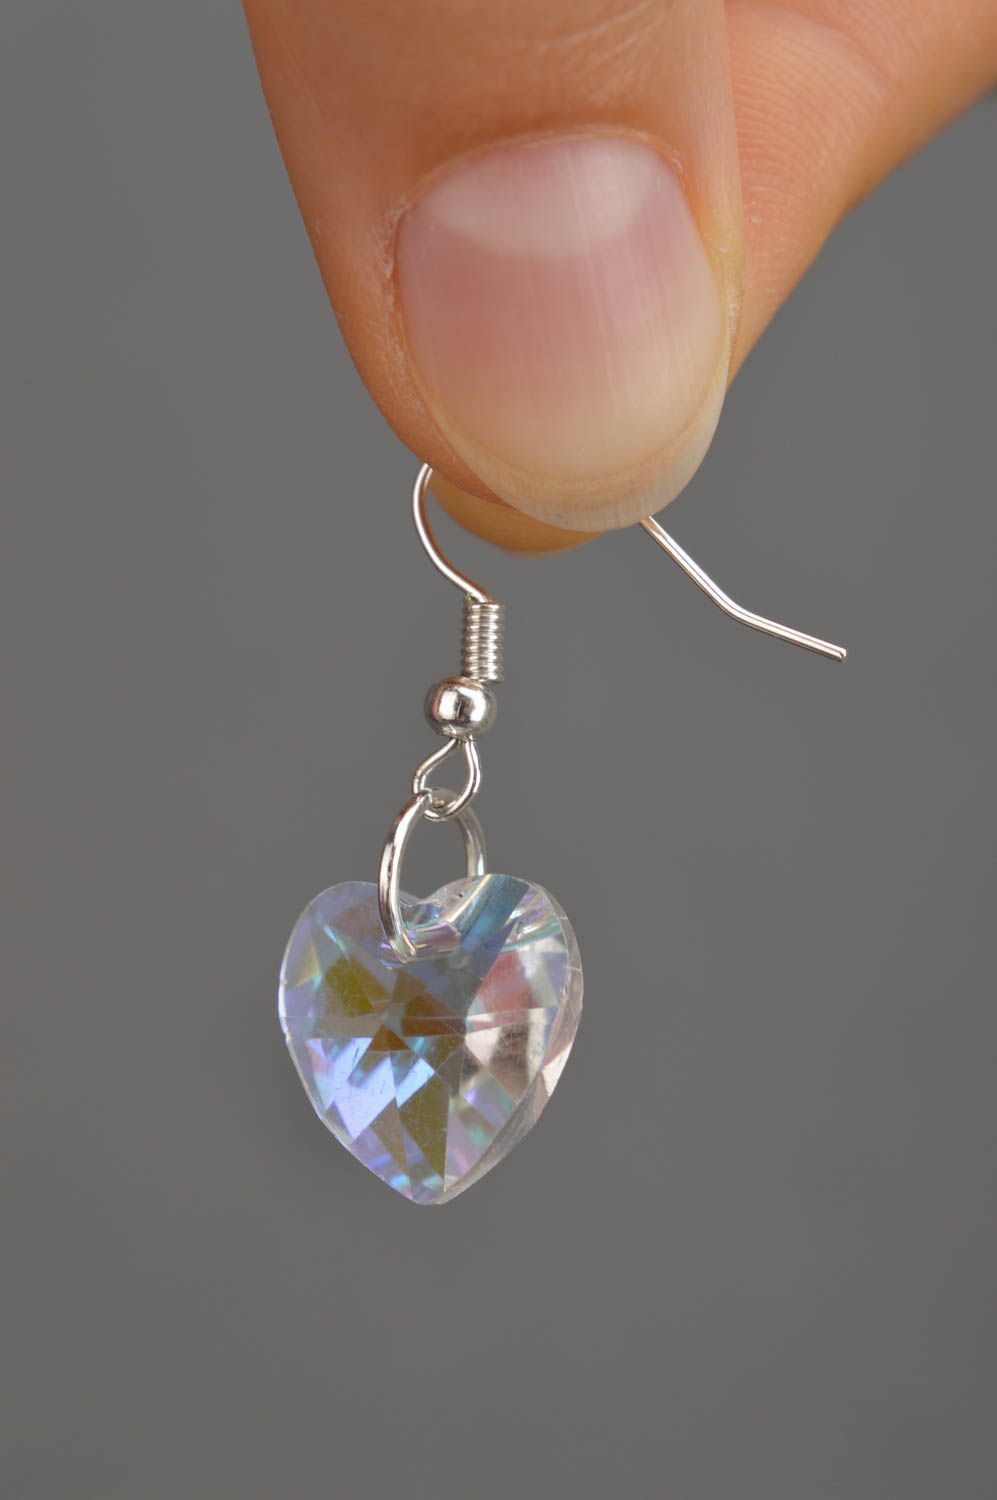 Handmade earrings designer jewelry glass earrings unusual accessory gift ideas photo 1